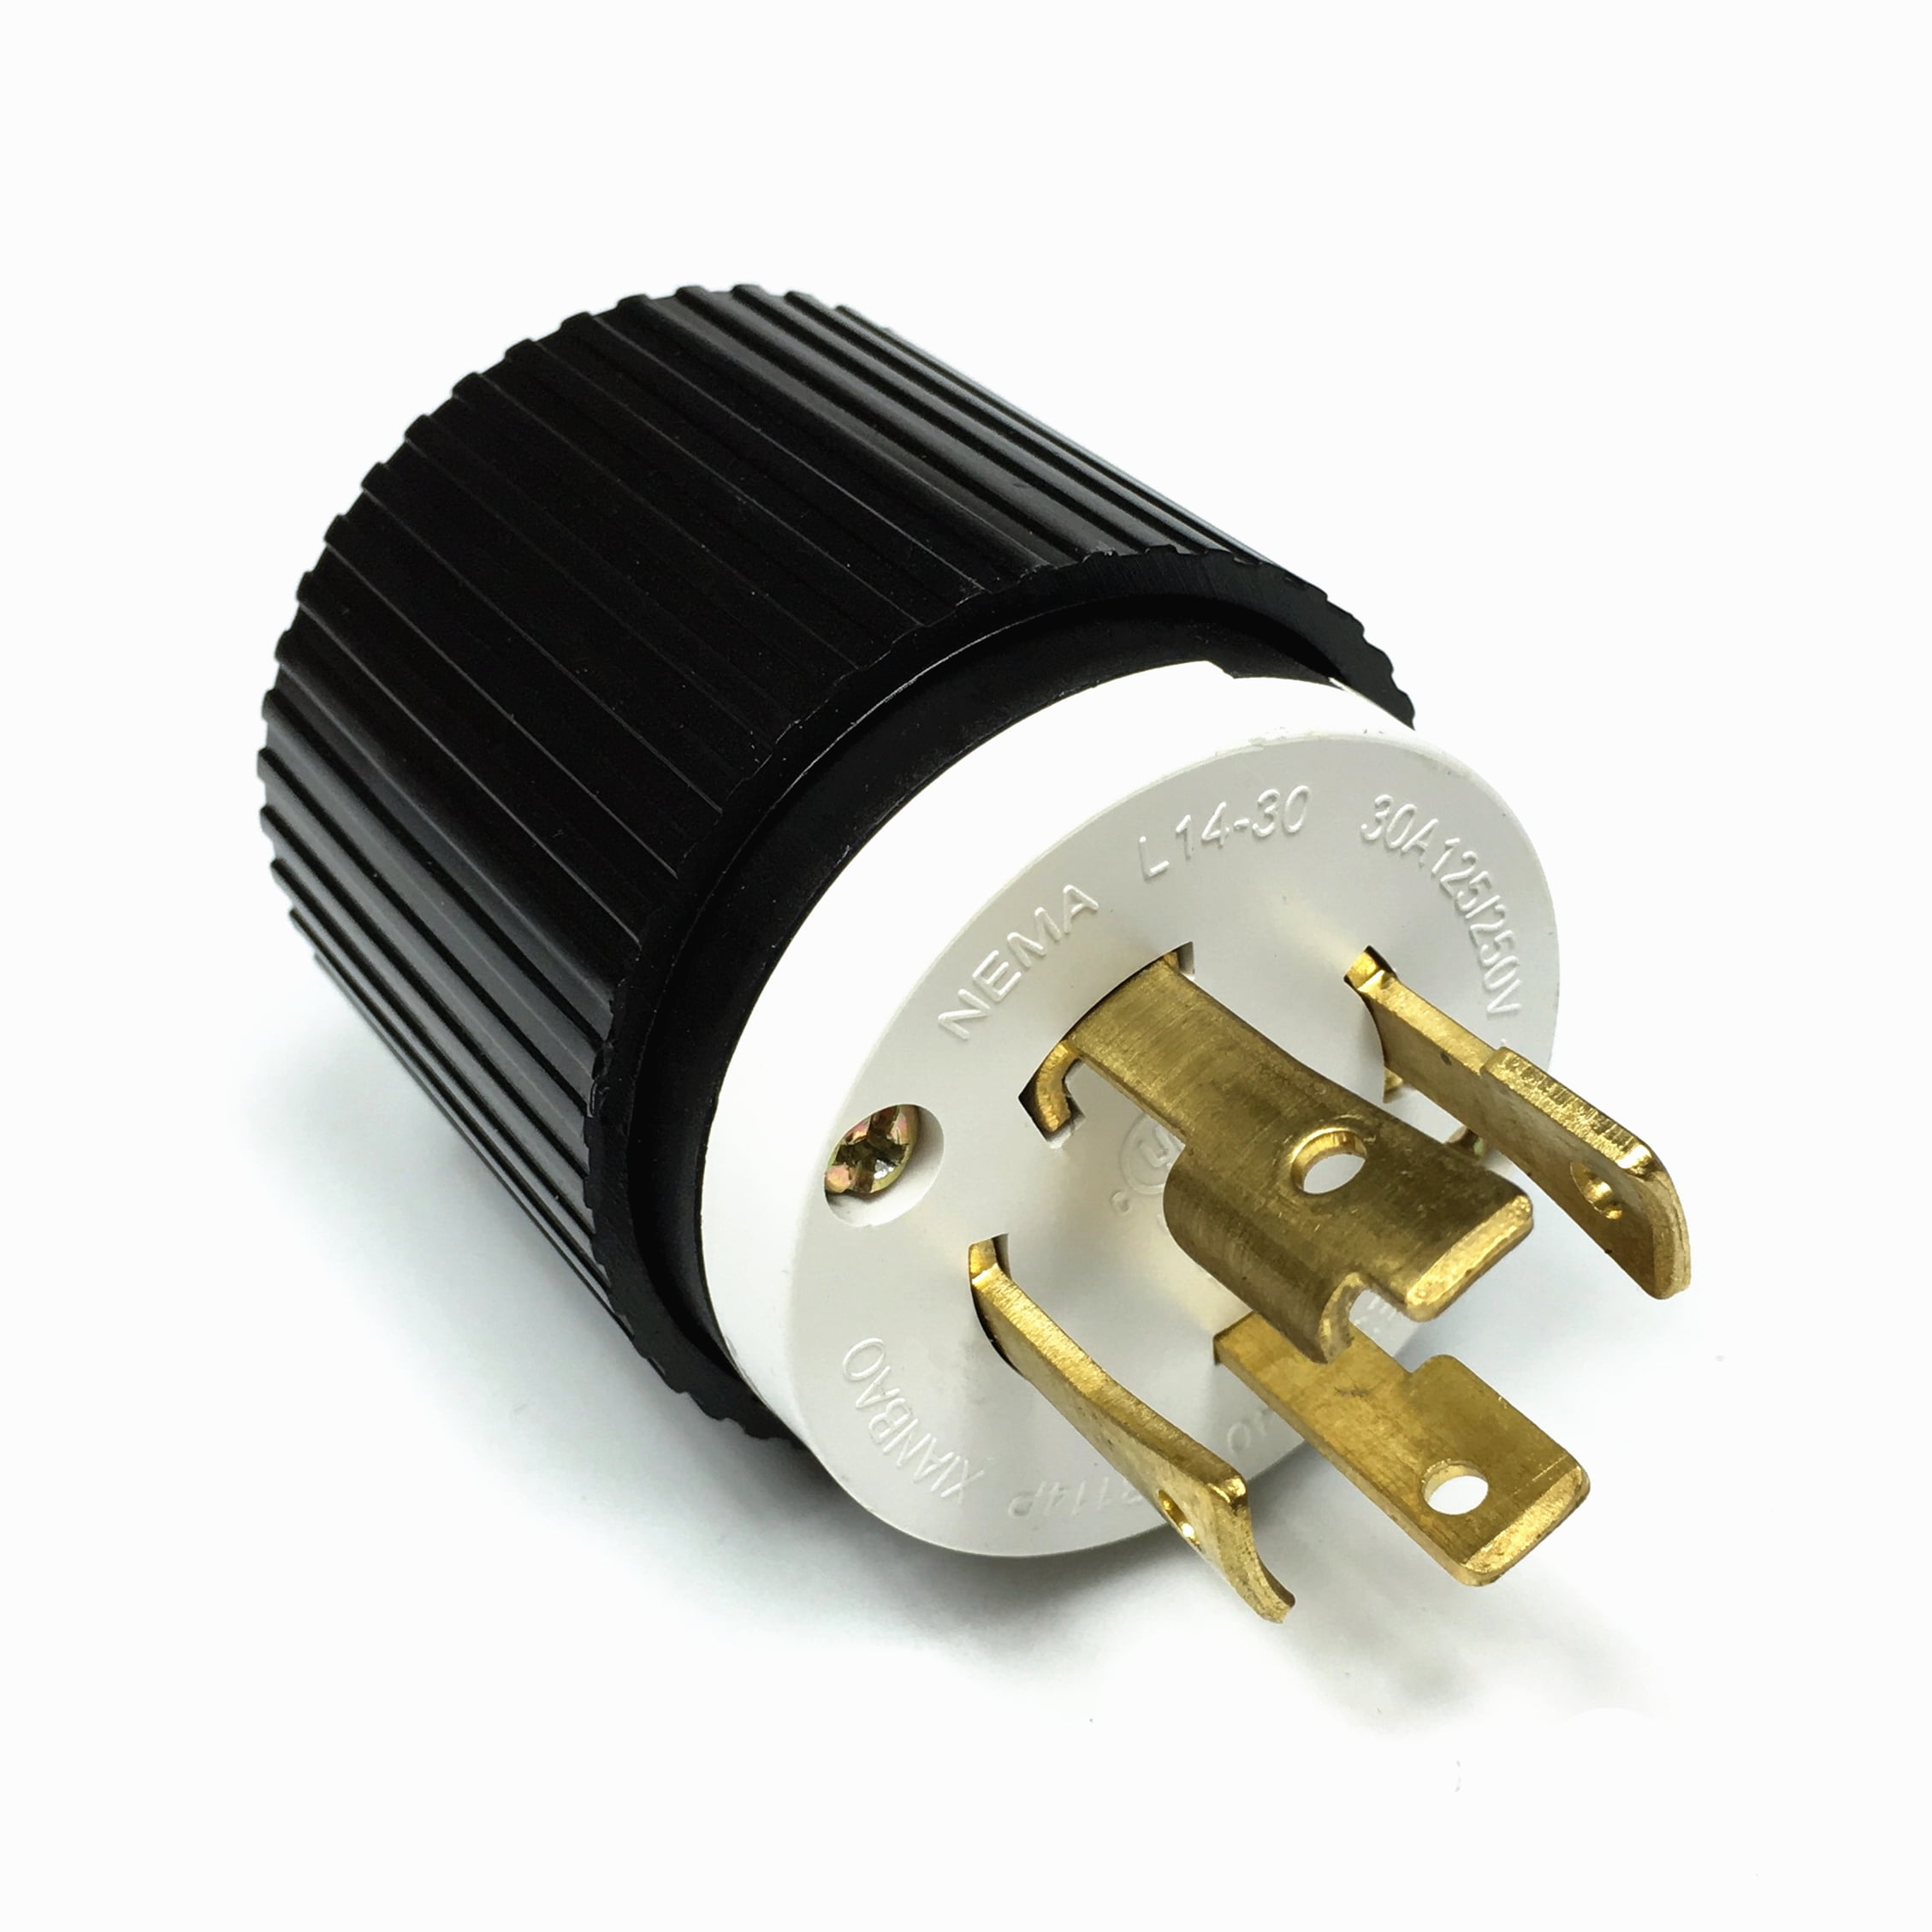 1pc L14-30 Locking Male Plug 30A 125Volt/250Volt Black NEW 1X 